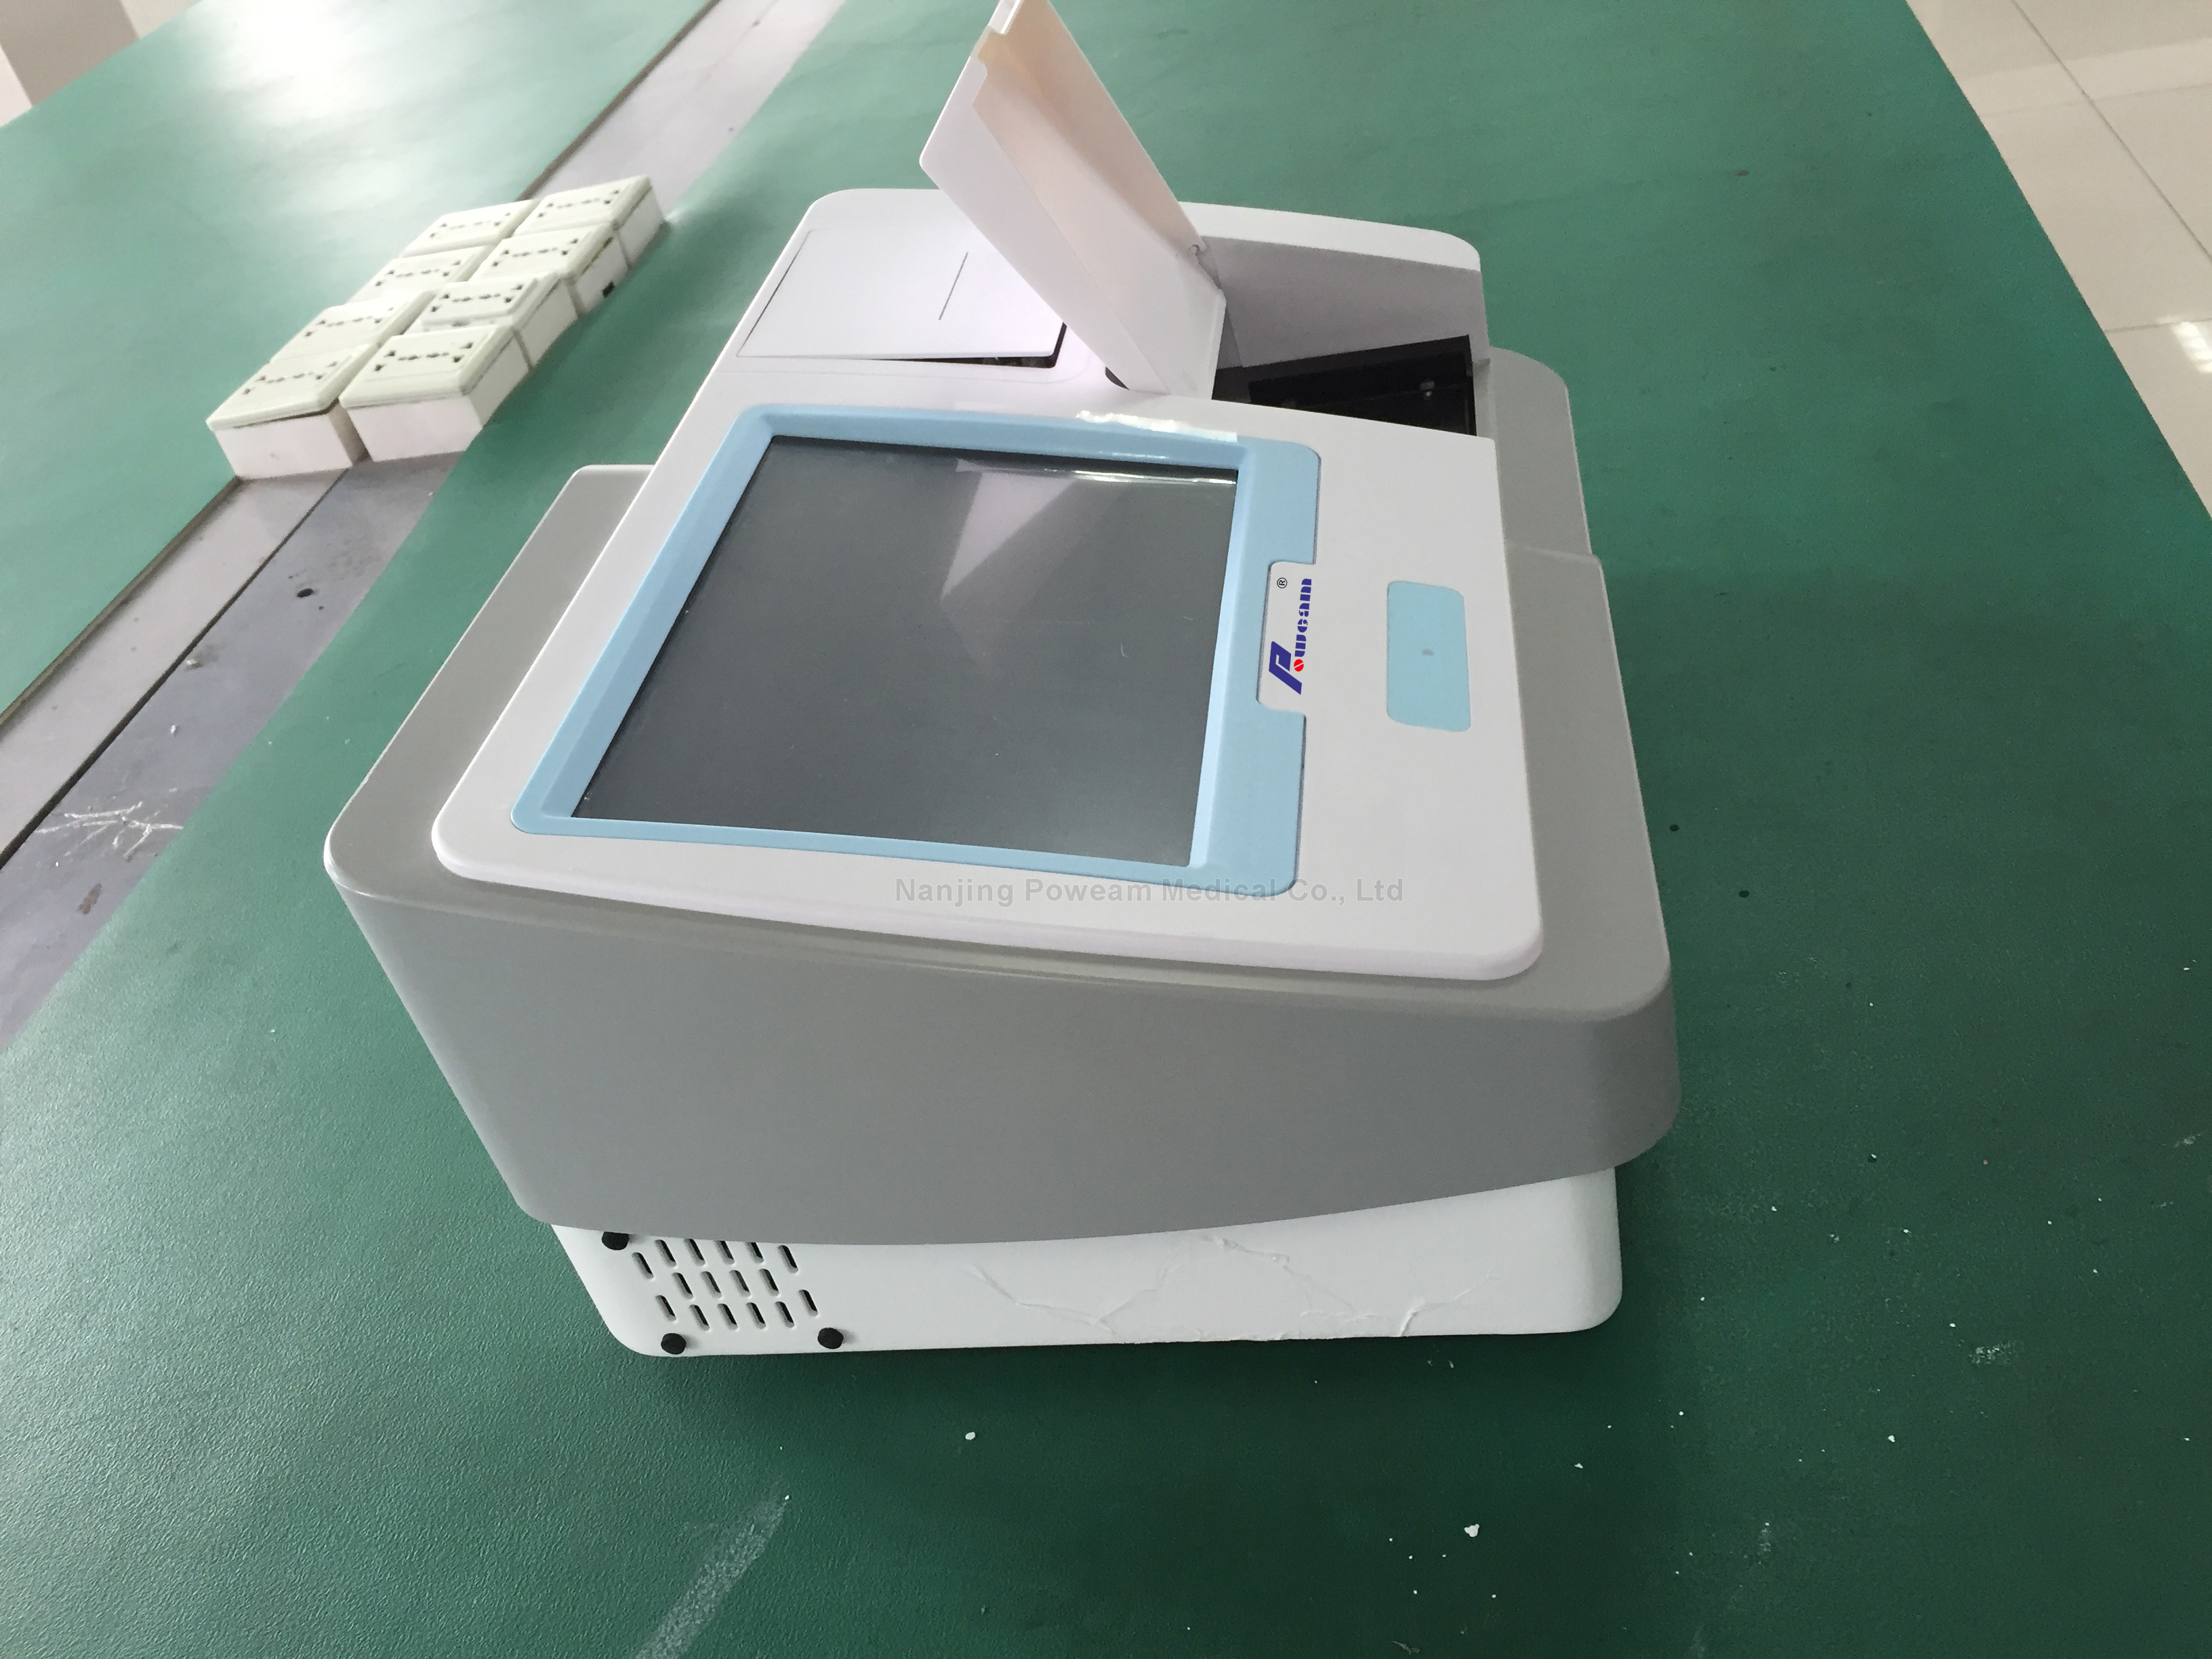 Mikroplattenleser / ELISA-Mikroplattenleser für Labor-Verwendung (Whym101B)